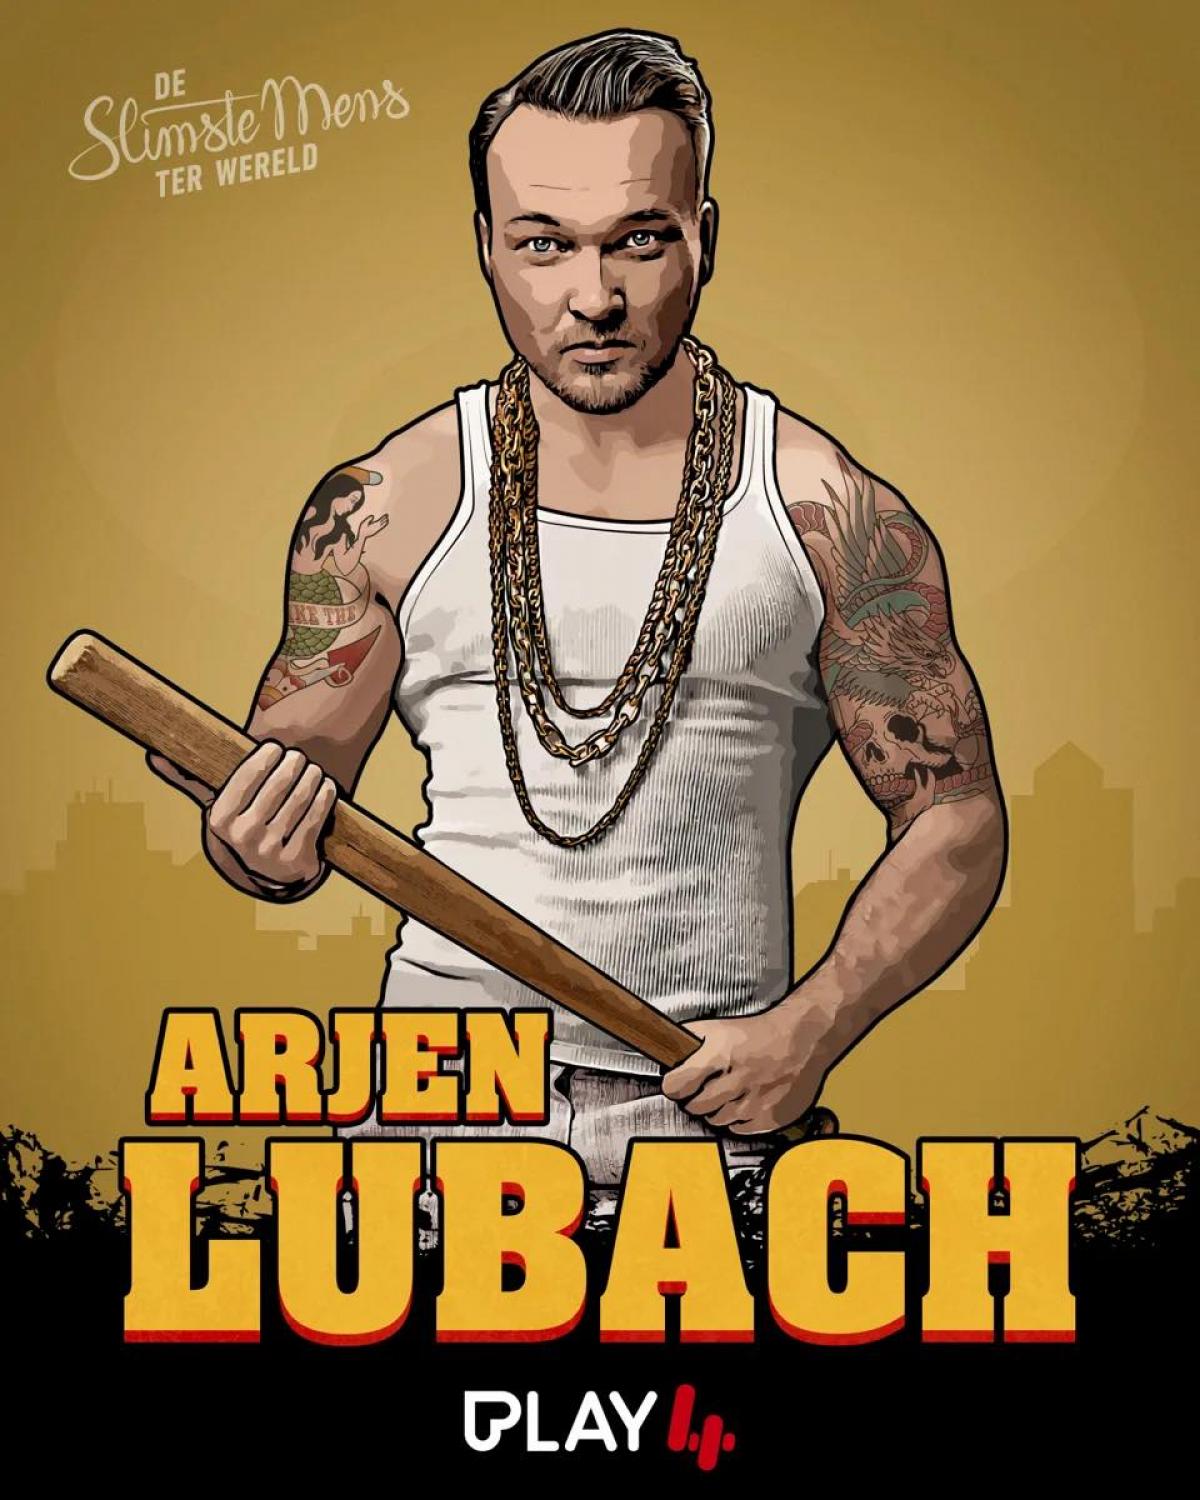 Nederlandse komiek Arjen Lubach